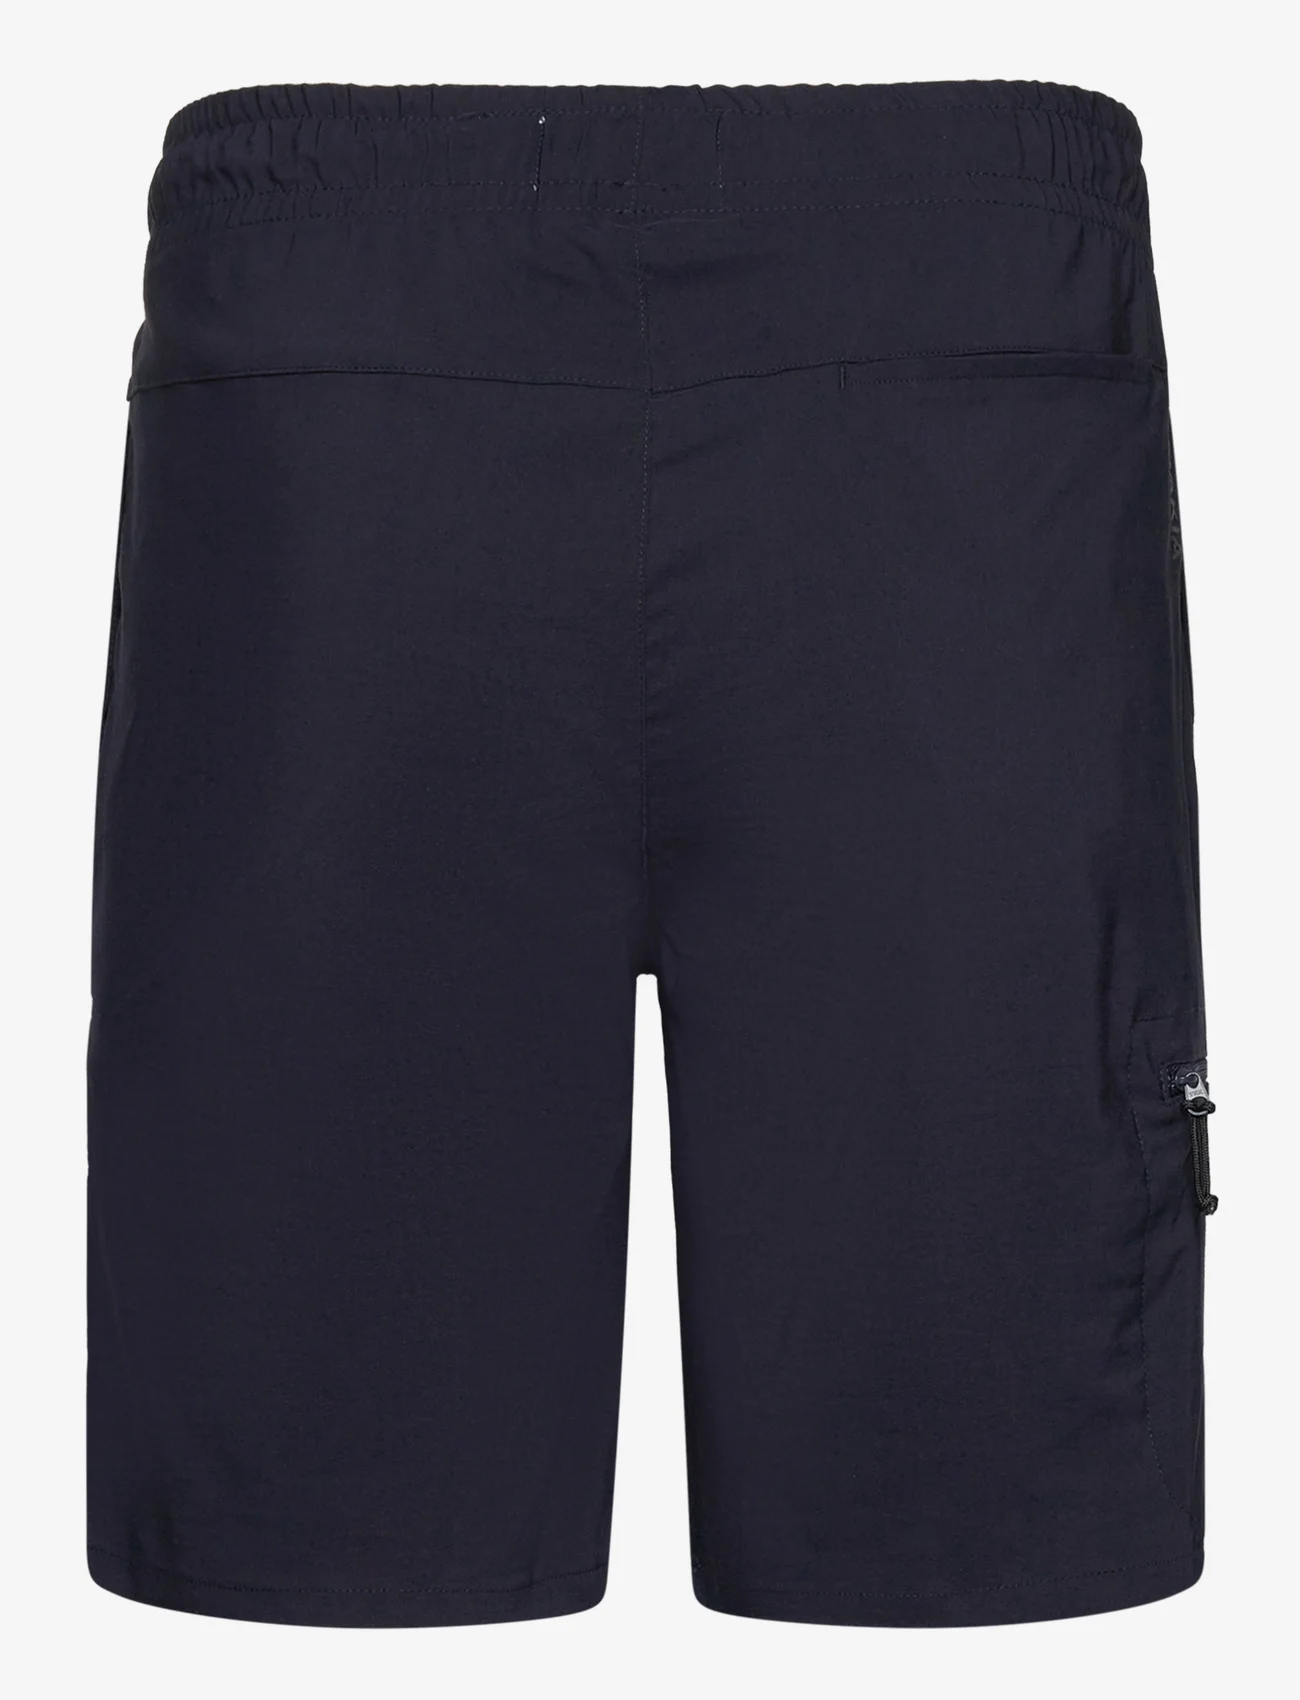 Makia - Kasper Shorts - casual shorts - dark navy - 1